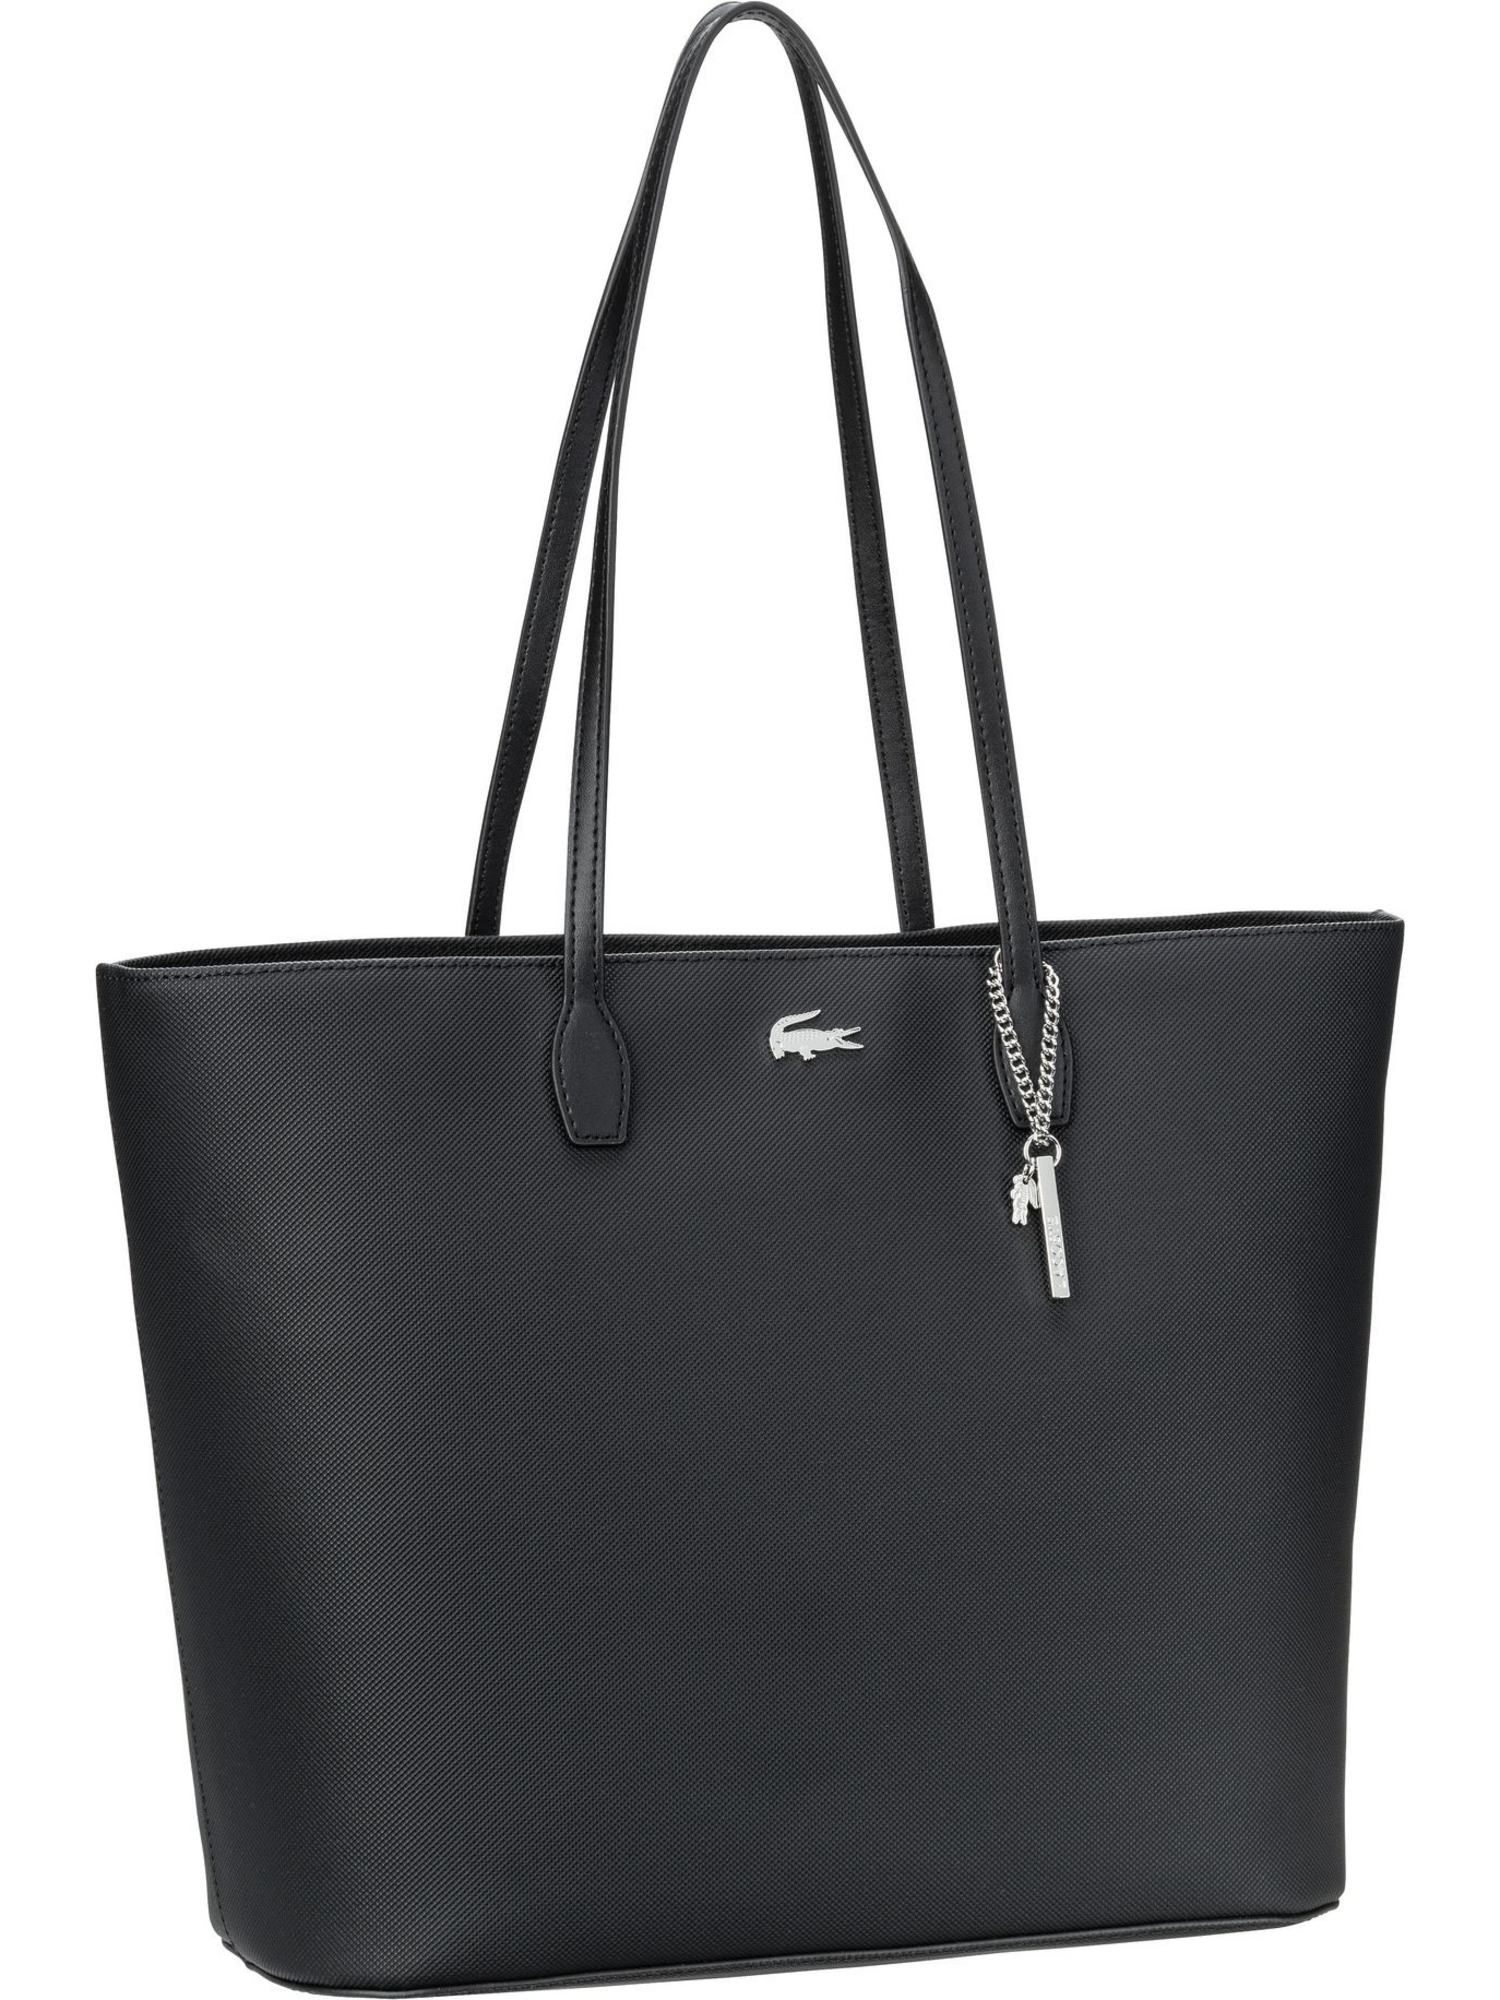 Сумка шоппер Lacoste Daily Lifestyle Shopping Bag 4373, цвет Noir